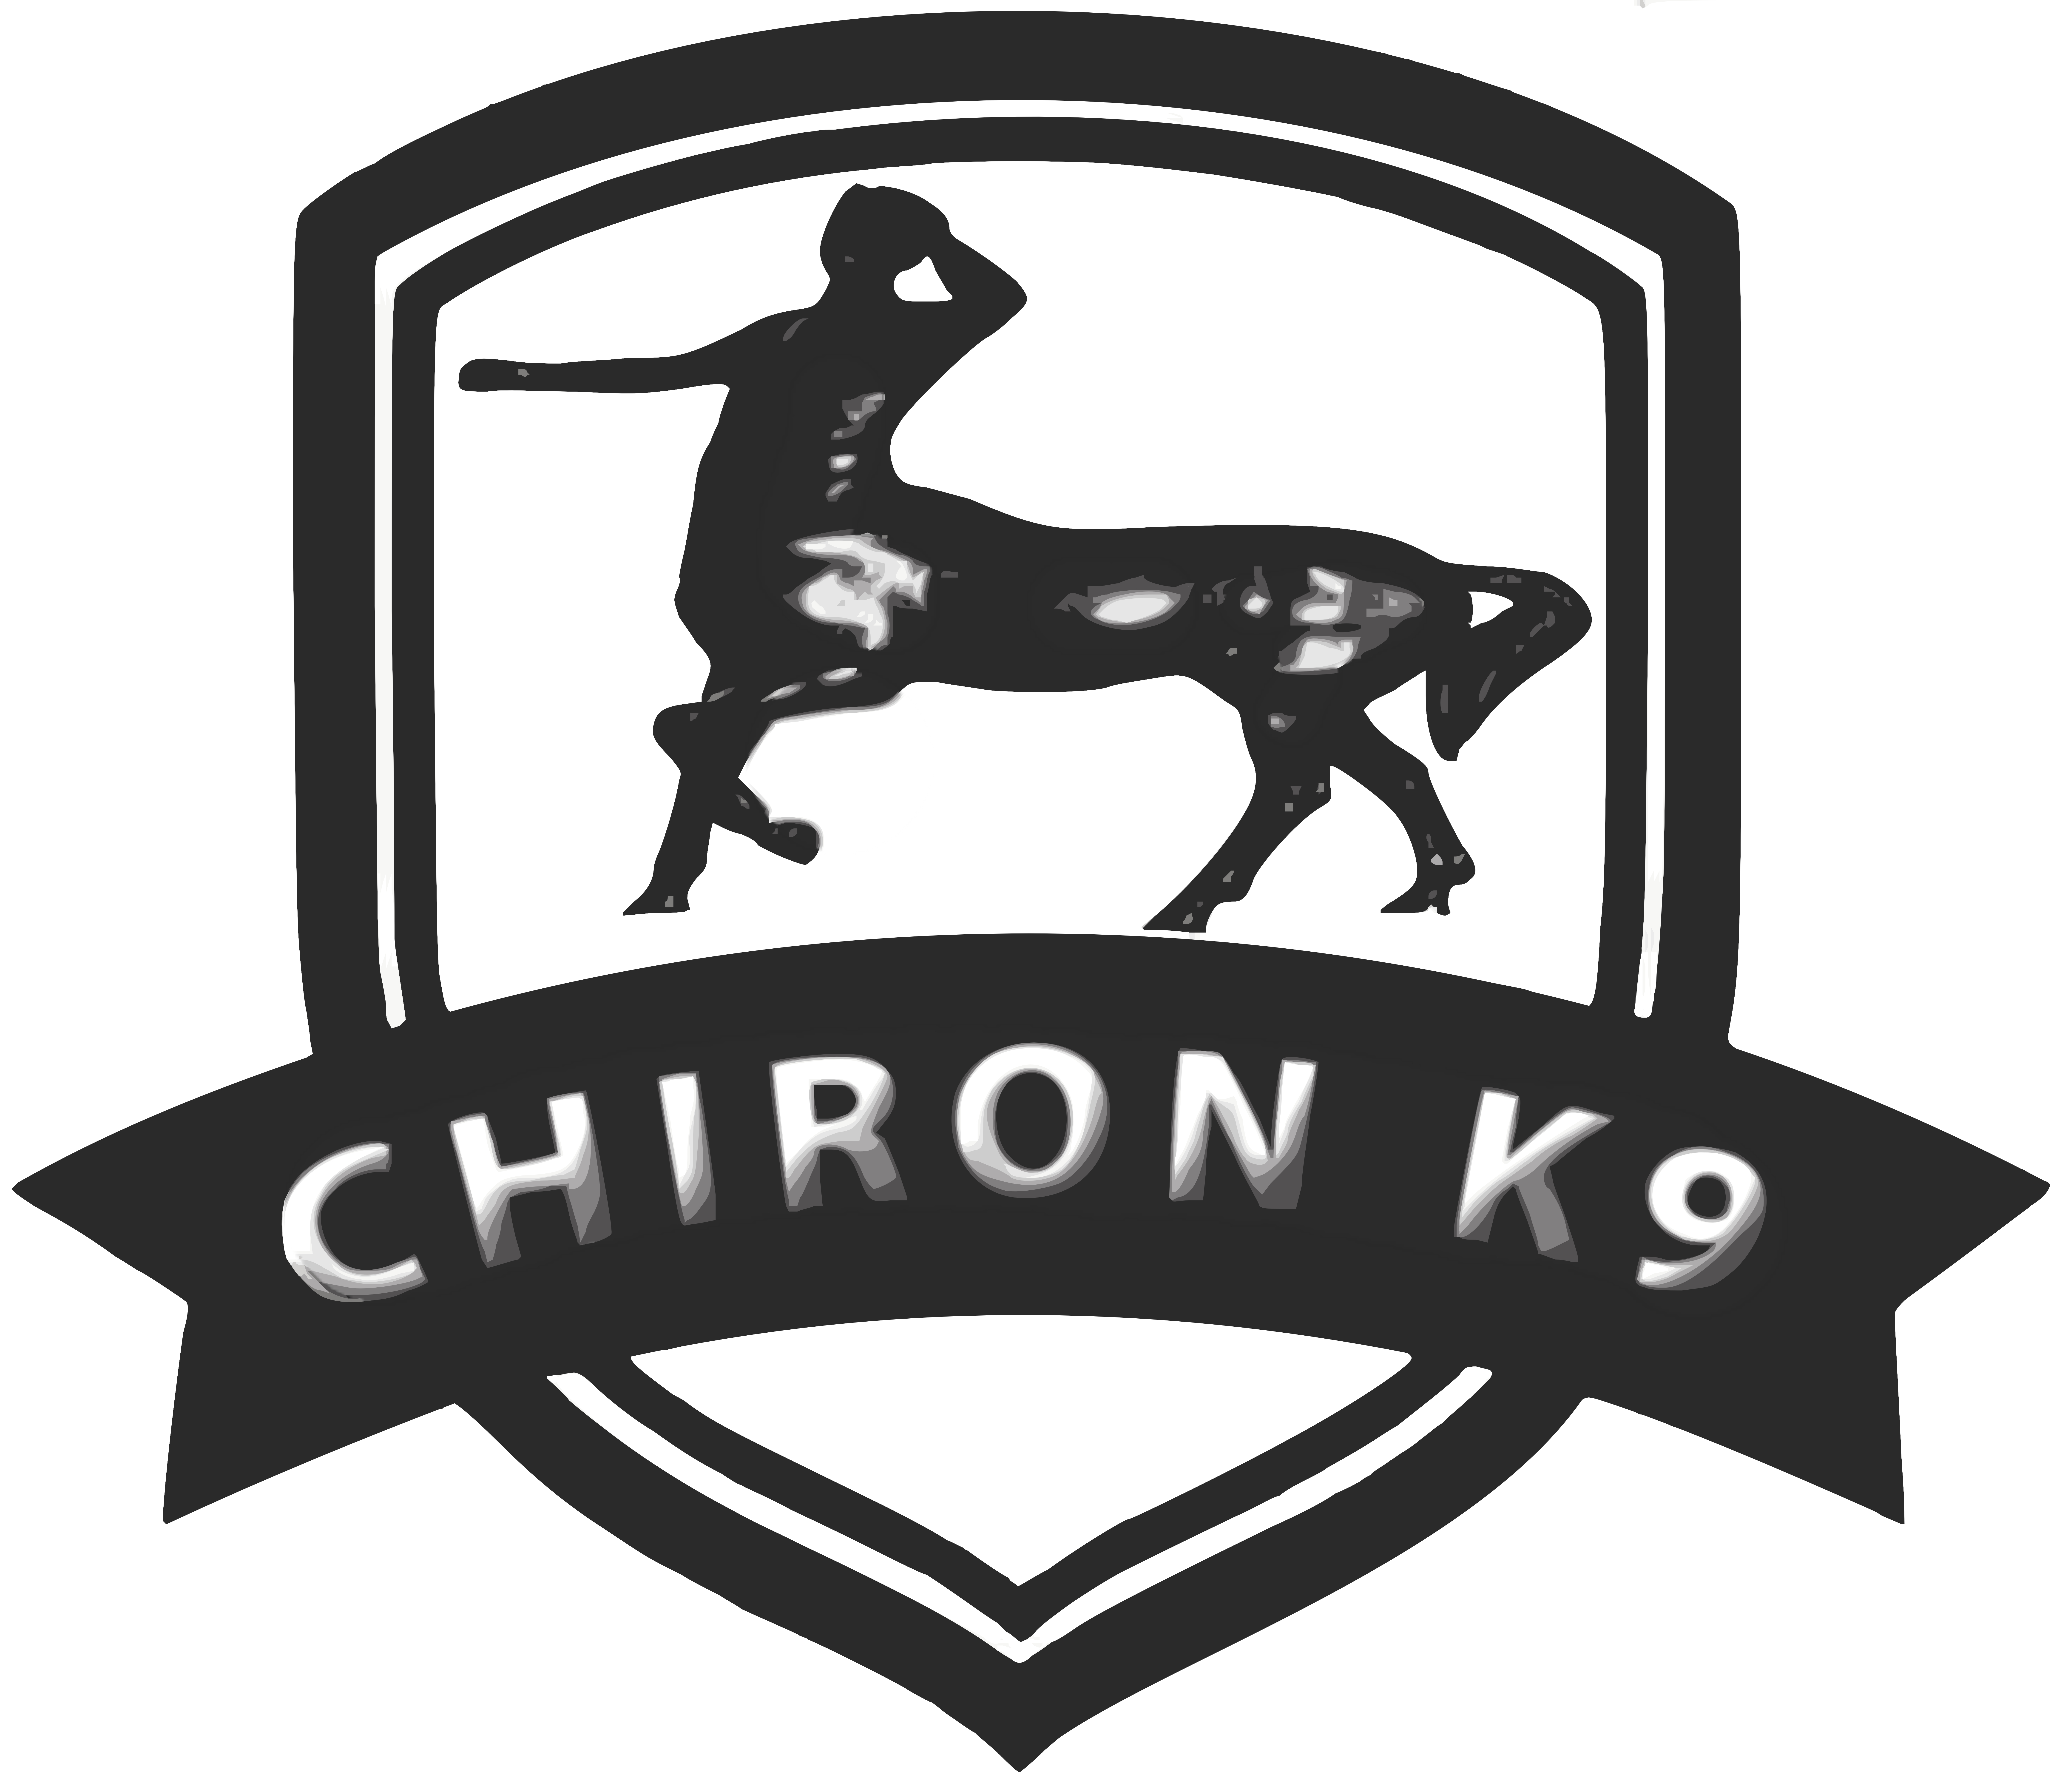 Chiron K9